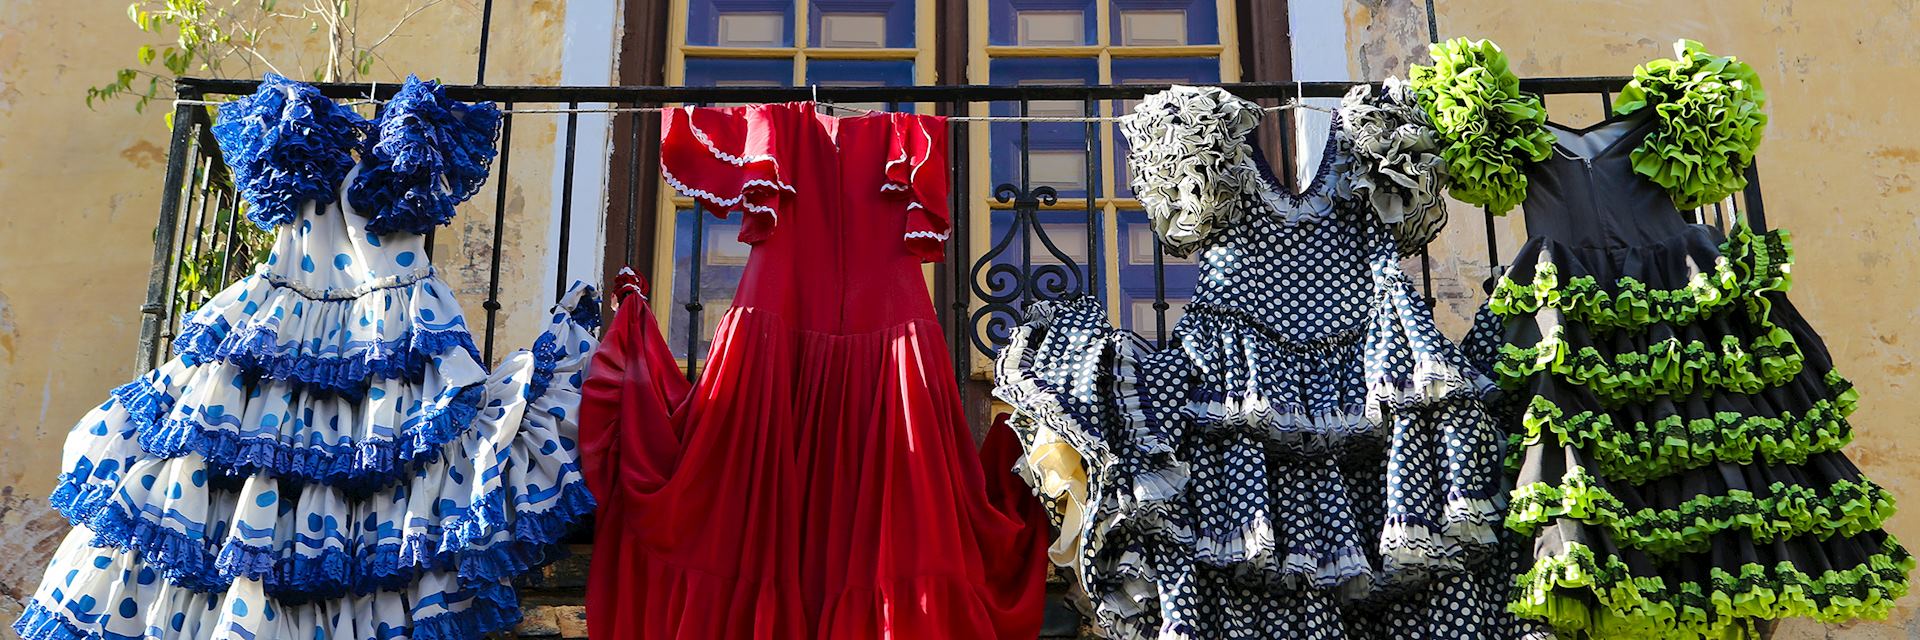 Traditional flamenco dresses